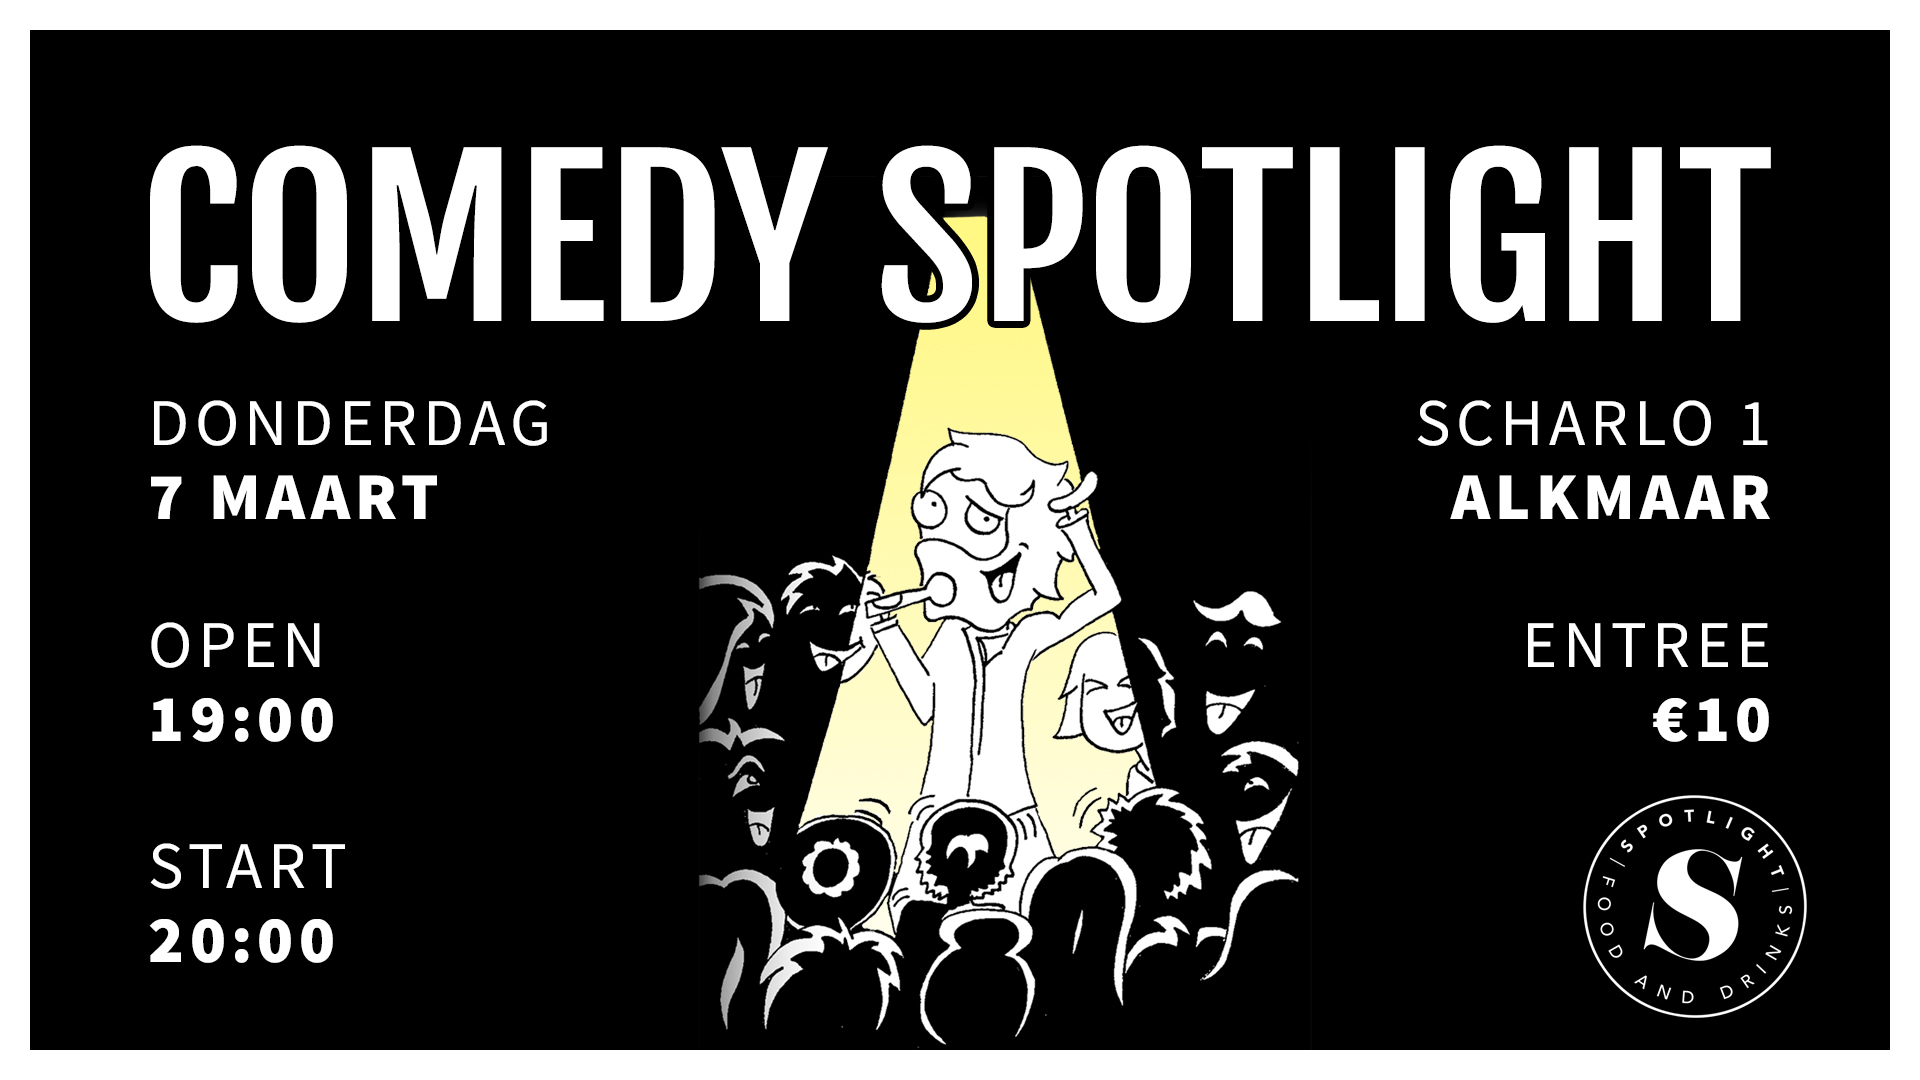 Ticket kopen voor evenement Comedy Spotlight Alkmaar